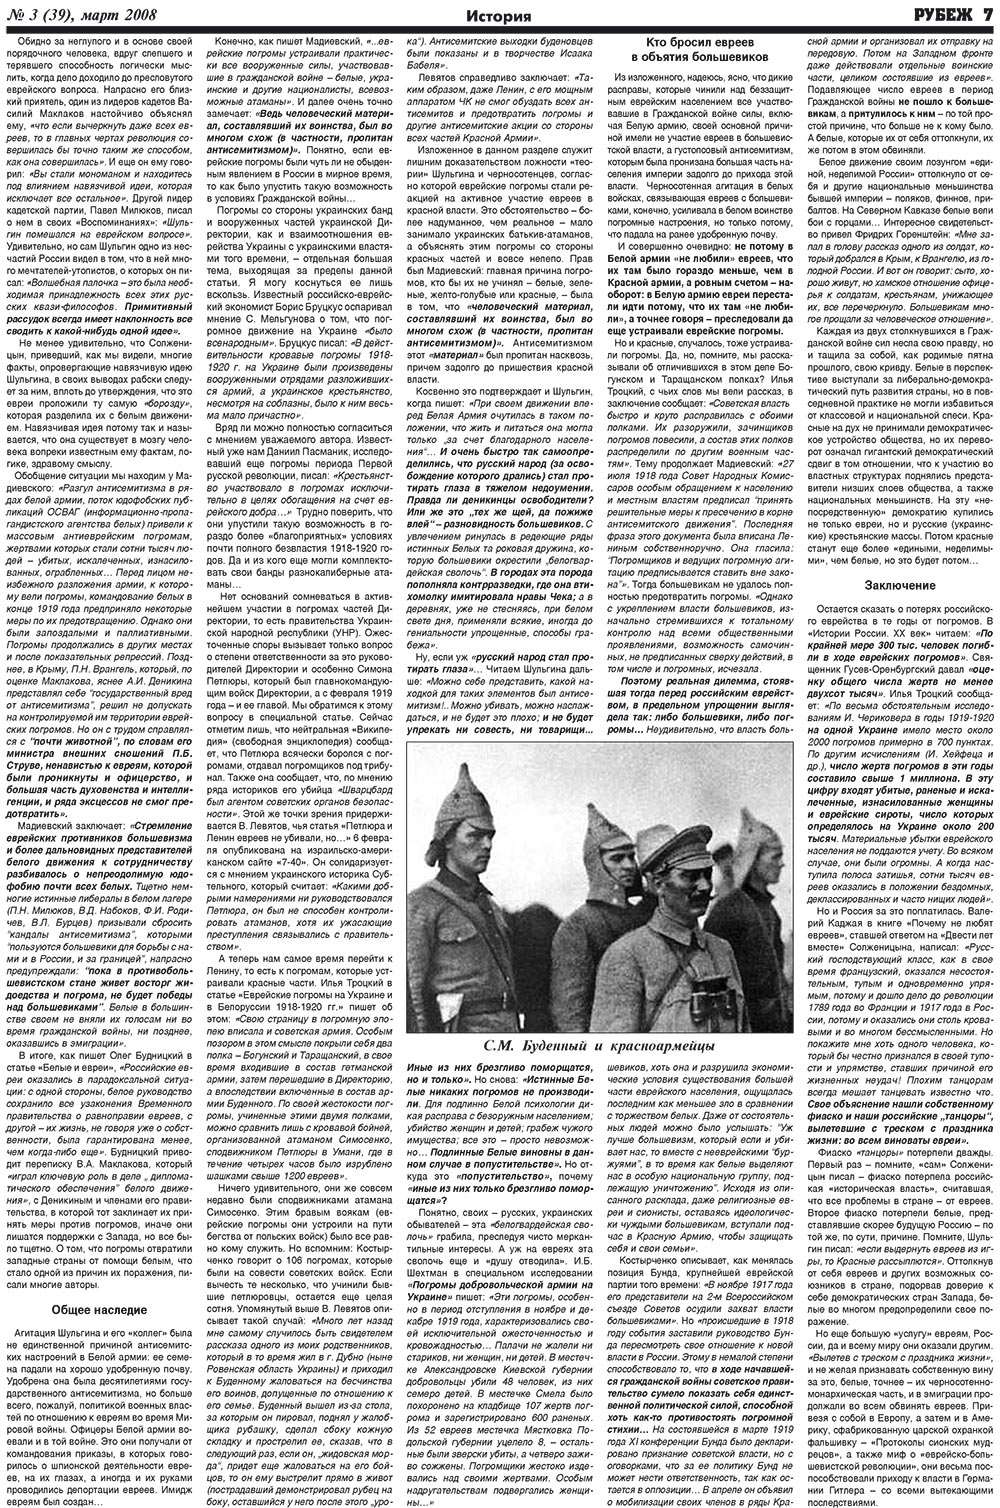 Рубеж (газета). 2008 год, номер 3, стр. 7